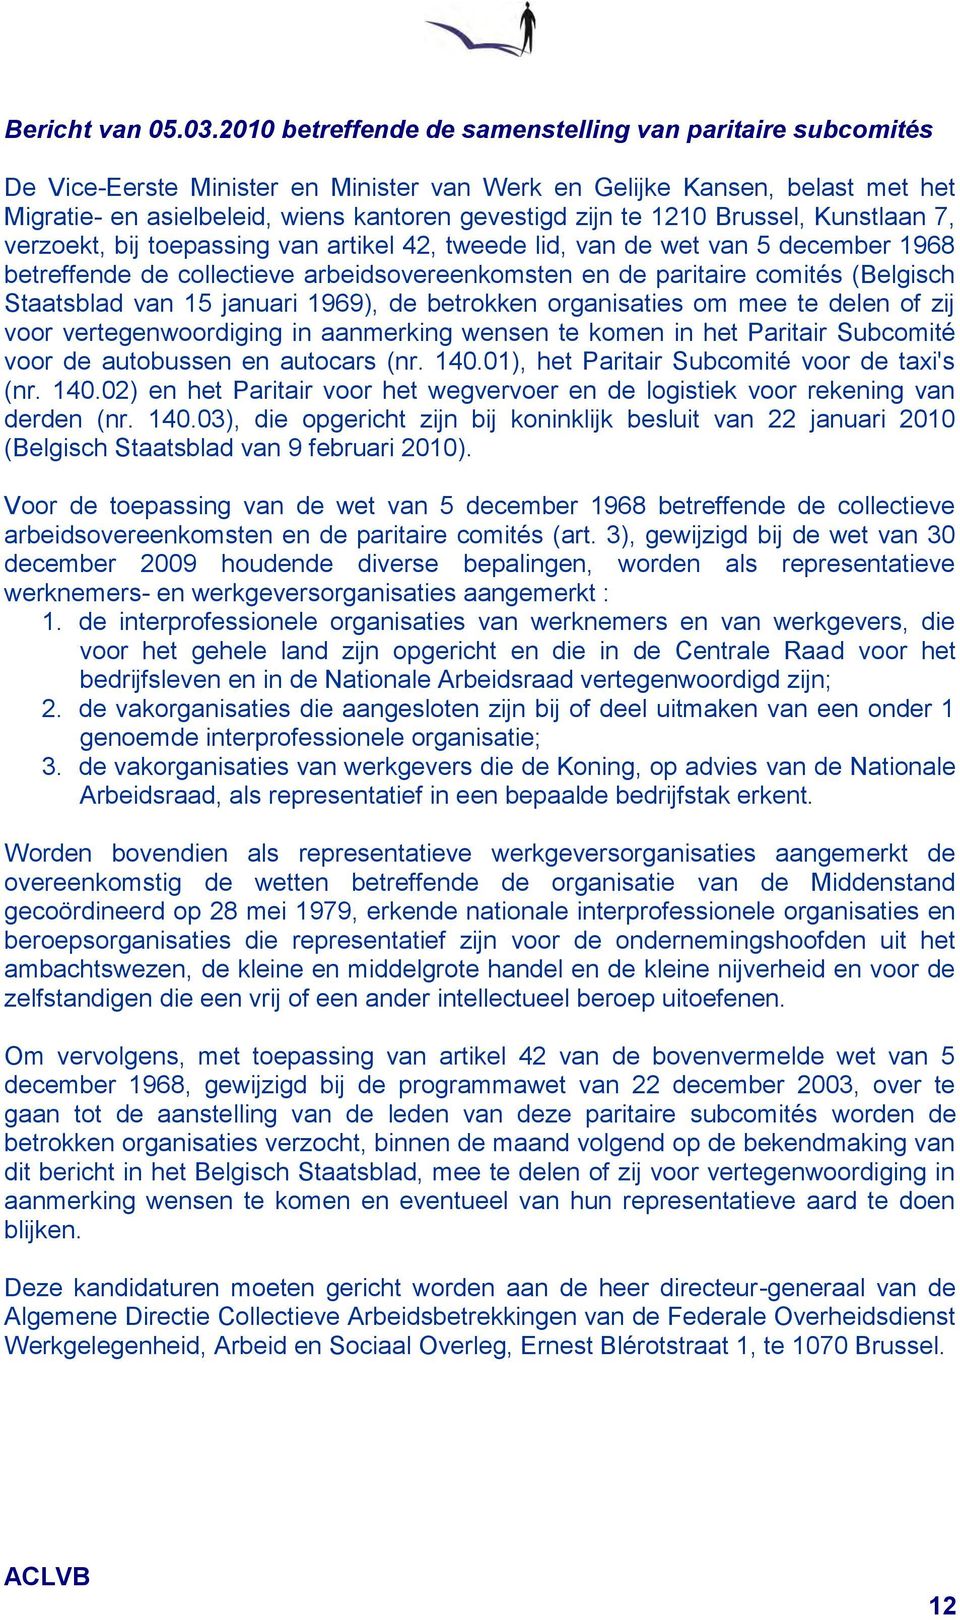 1210 Brussel, Kunstlaan 7, verzoekt, bij toepassing van artikel 42, tweede lid, van de wet van 5 december 1968 betreffende de collectieve arbeidsovereenkomsten en de paritaire comités (Belgisch